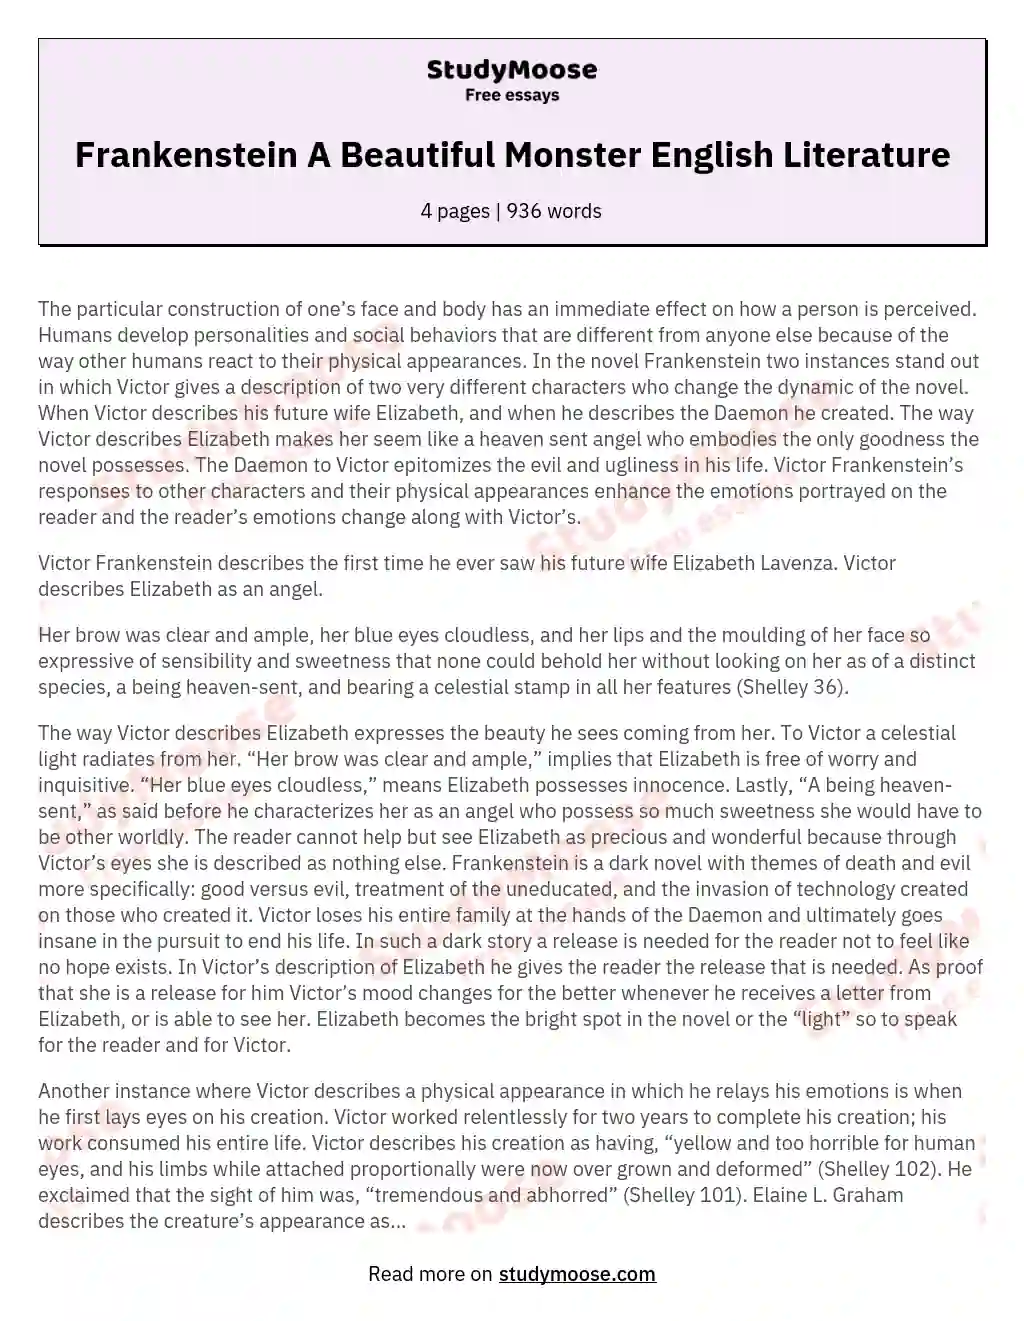 Frankenstein A Beautiful Monster English Literature essay